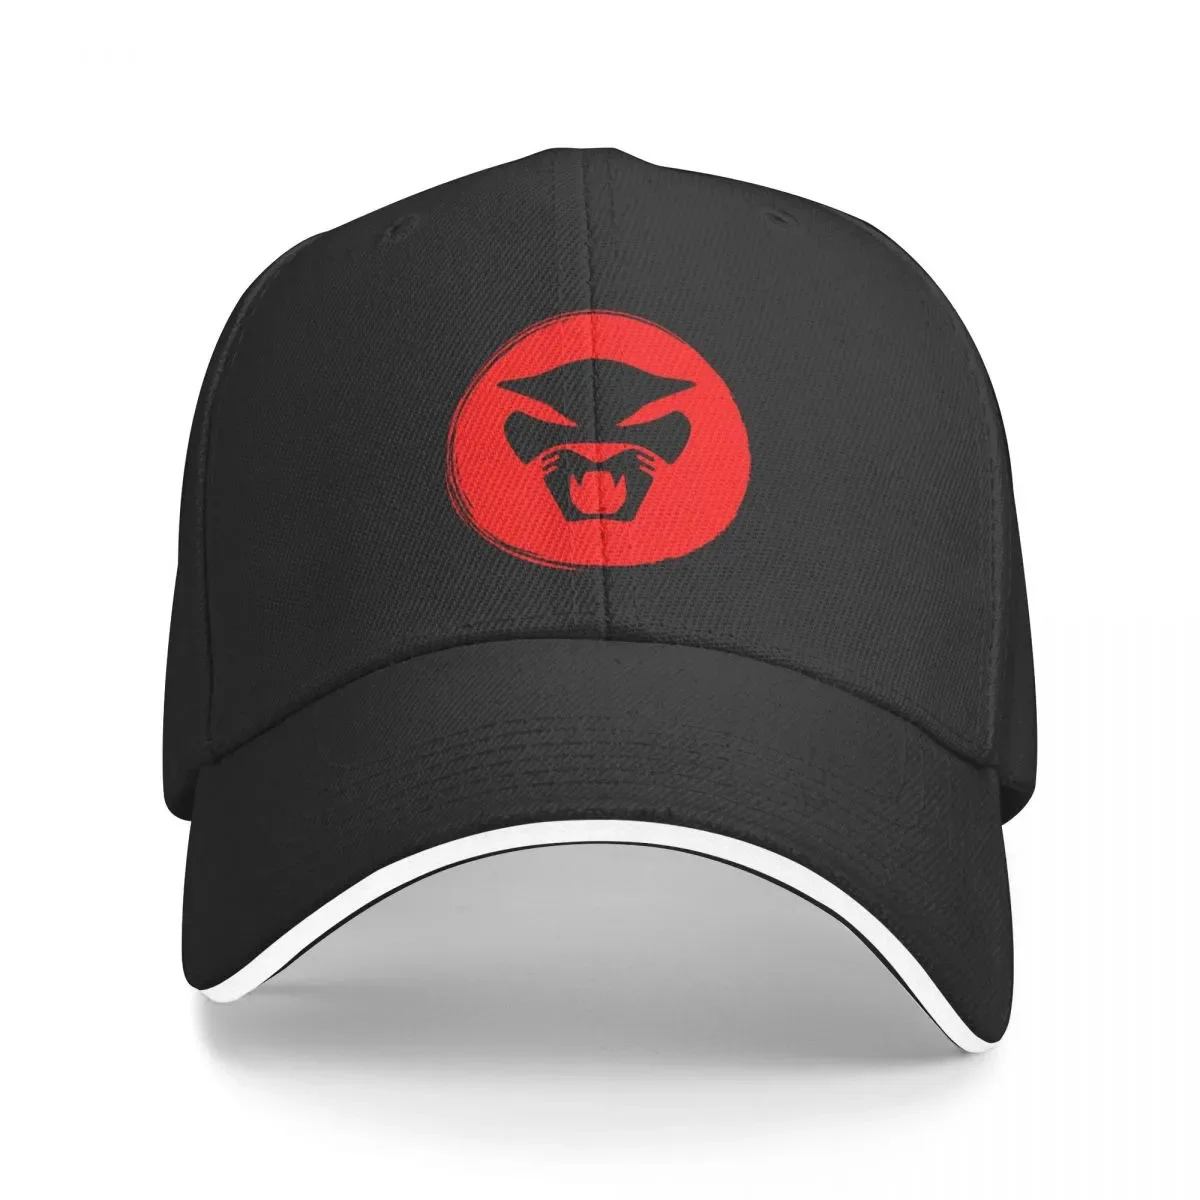 

New Thundercat Cap Baseball Cap baseball hat luxury brand Luxury cap hats for men Women's